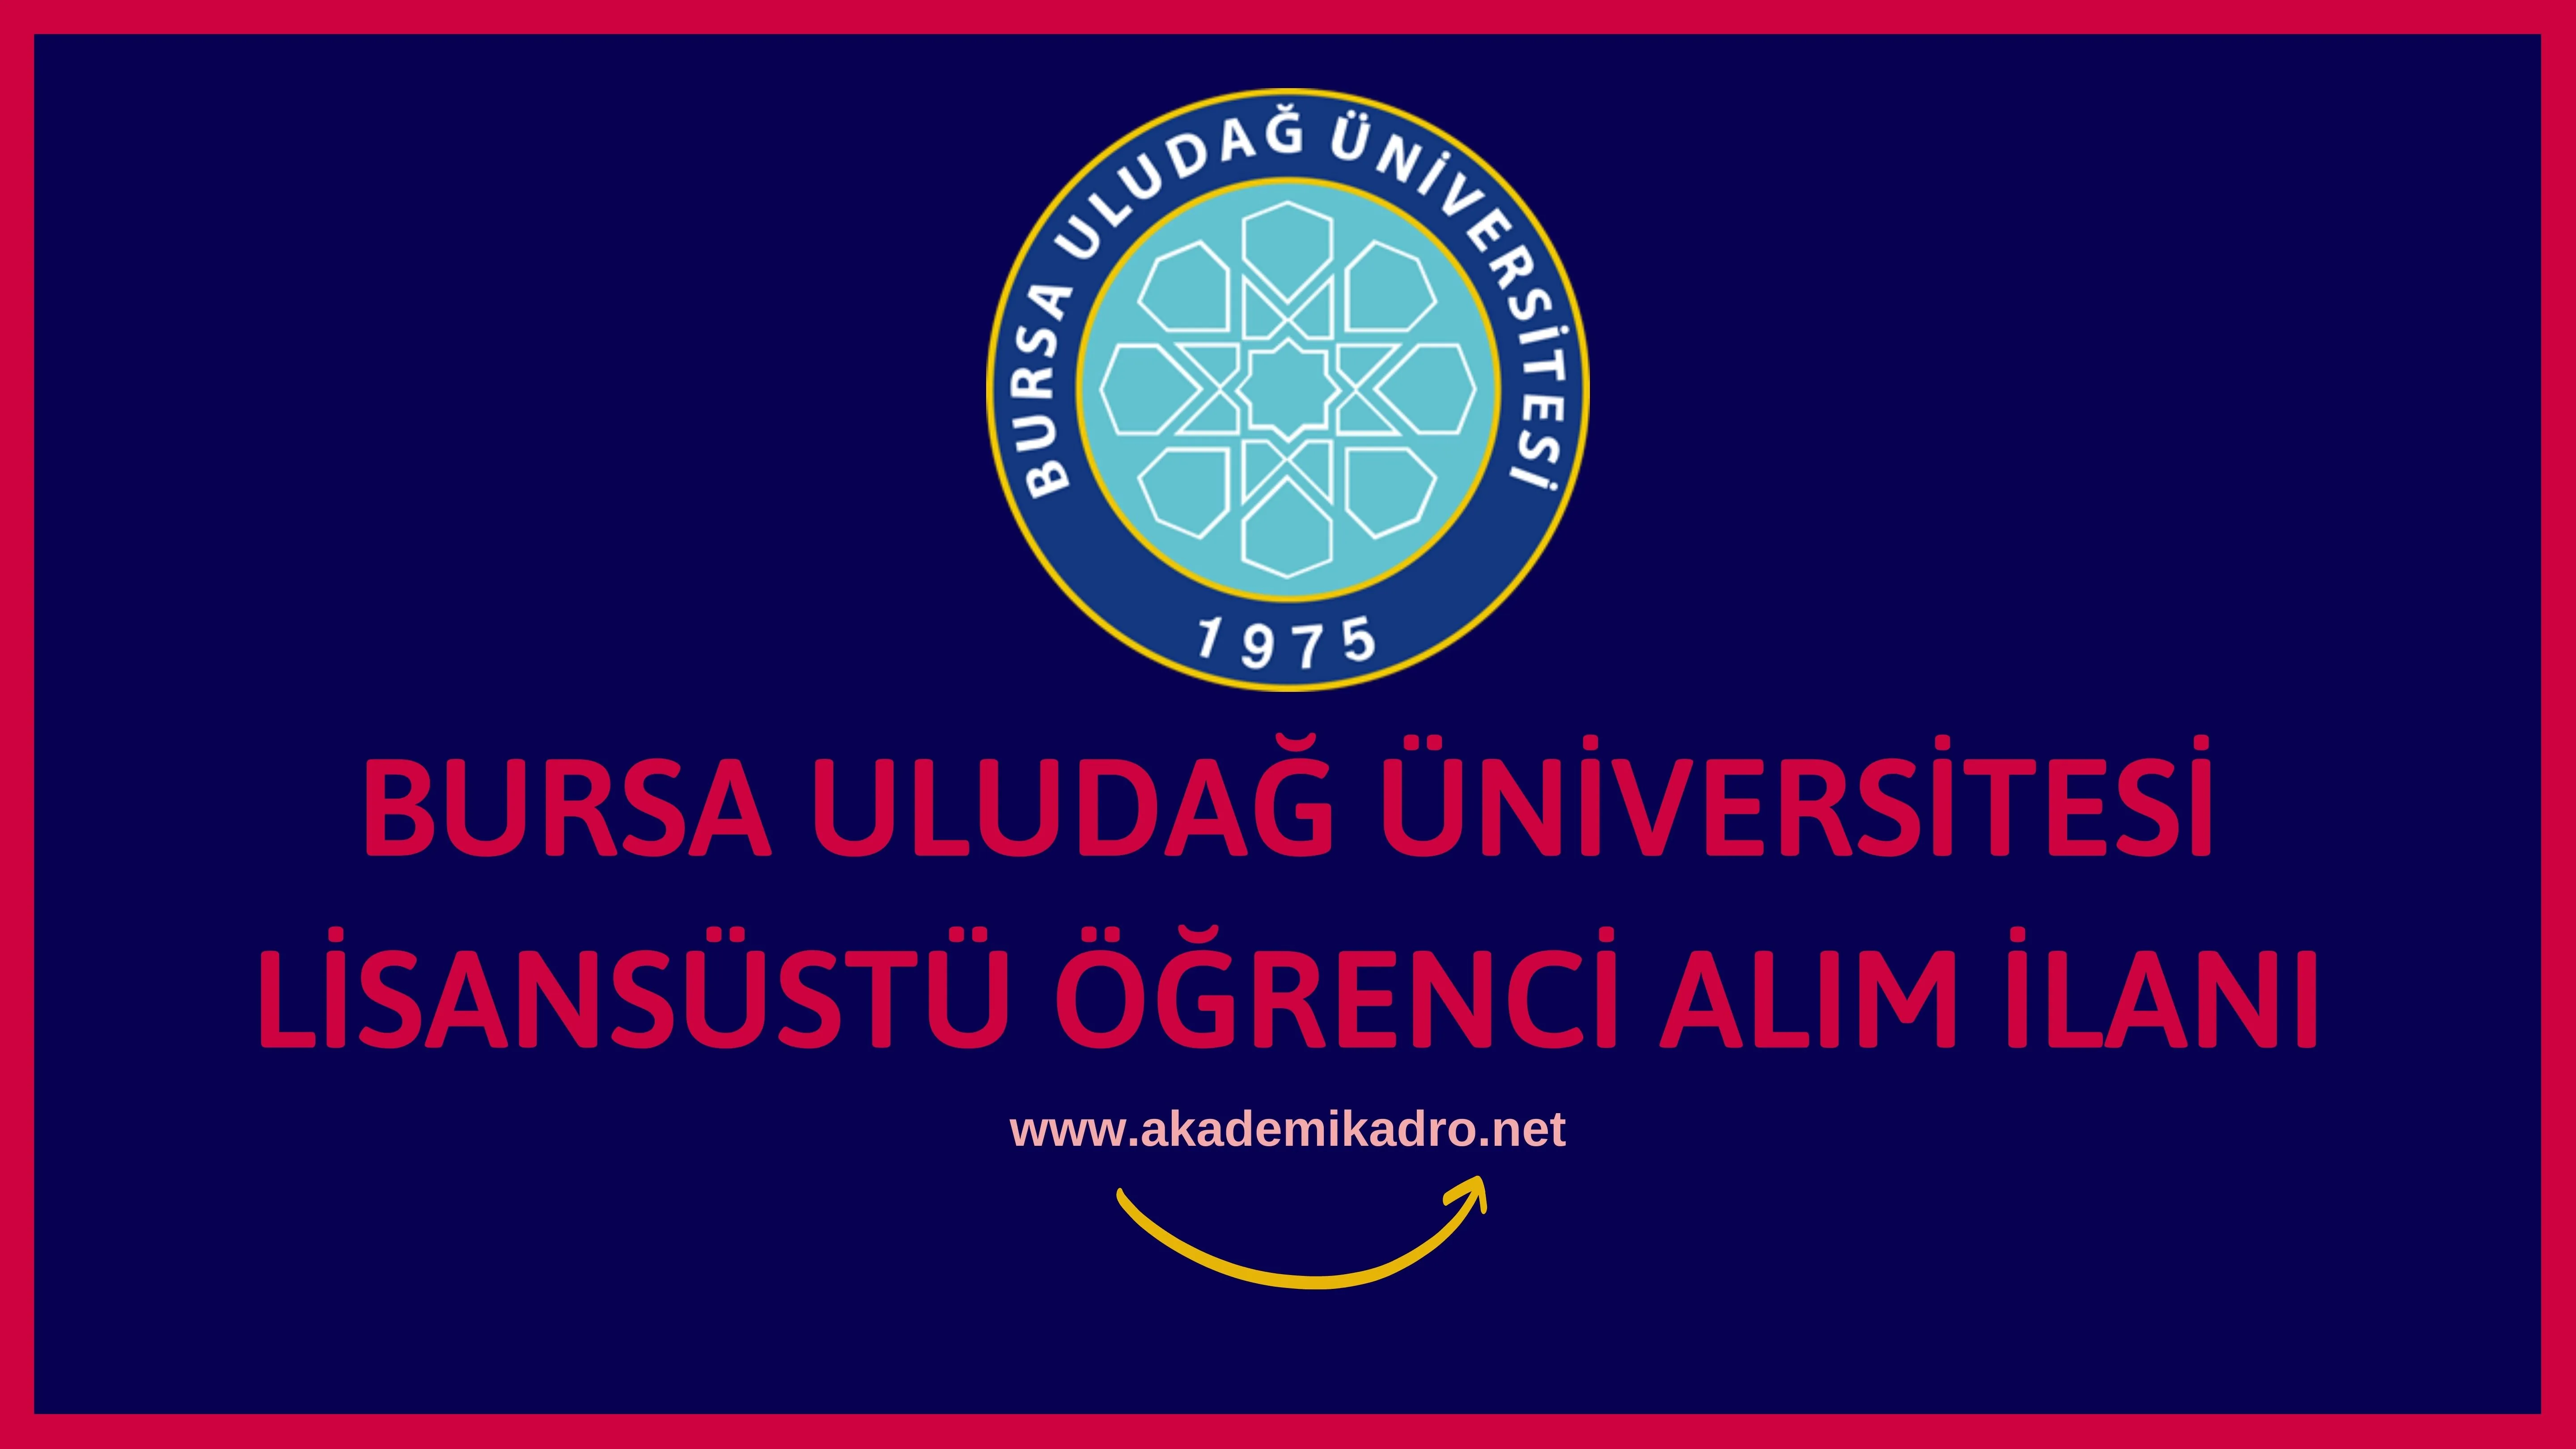 Bursa Uludağ Üniversitesi 2022-2023 Akademik yılı Lisansüstü ek öğrenci alım ilanı yayımlandı.